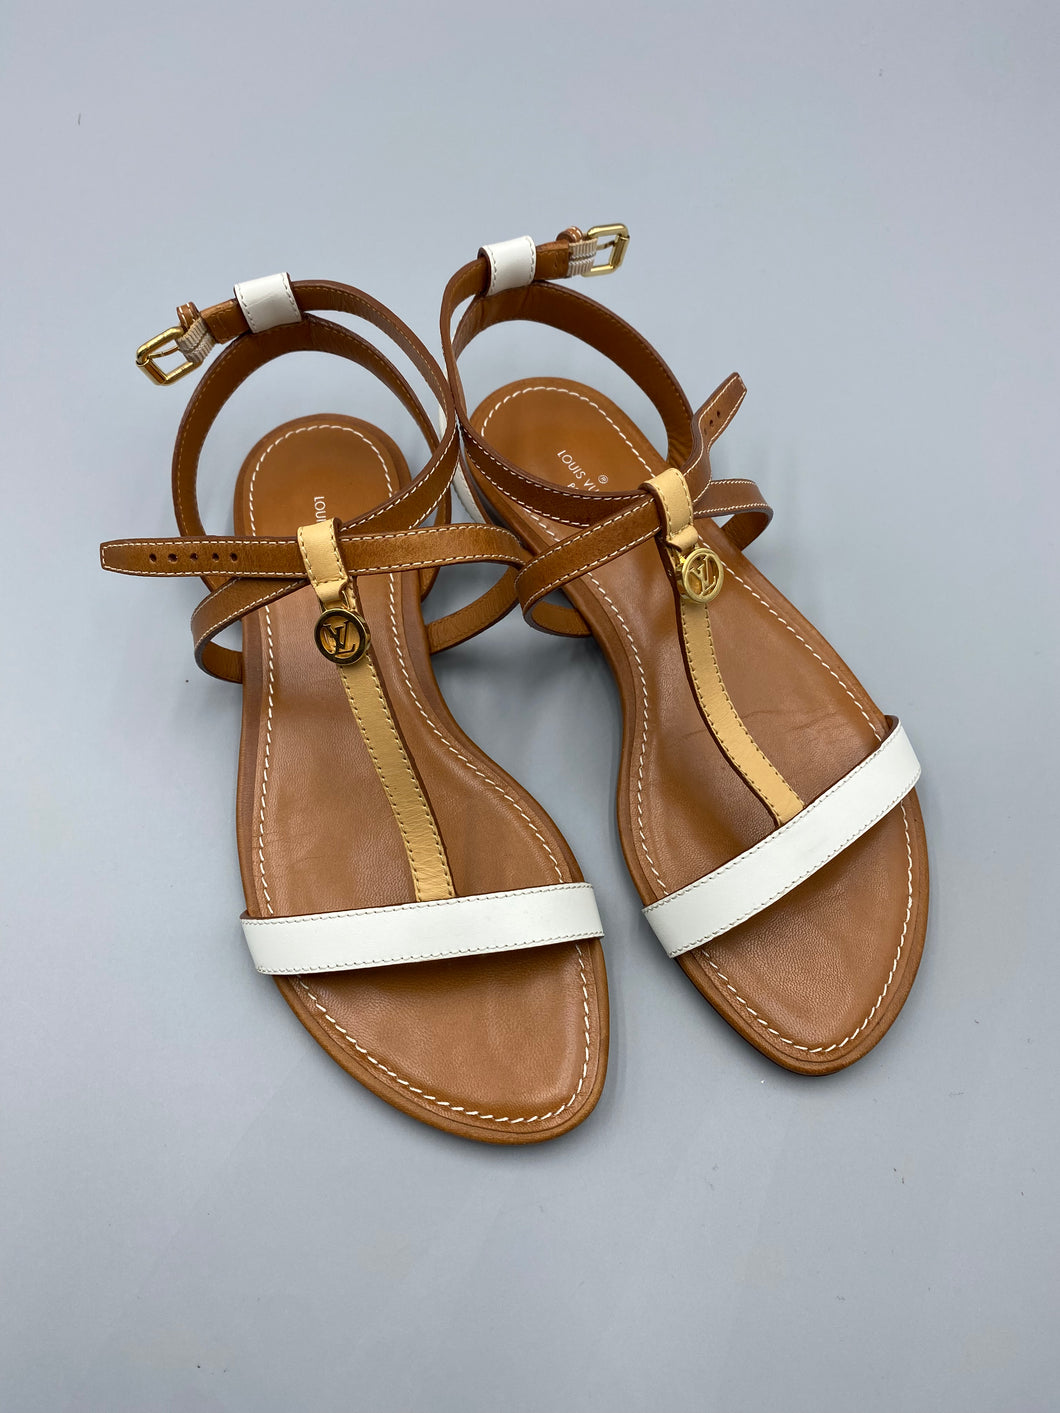 Louis Vuitton Bicolor leather sandals - size 36.5